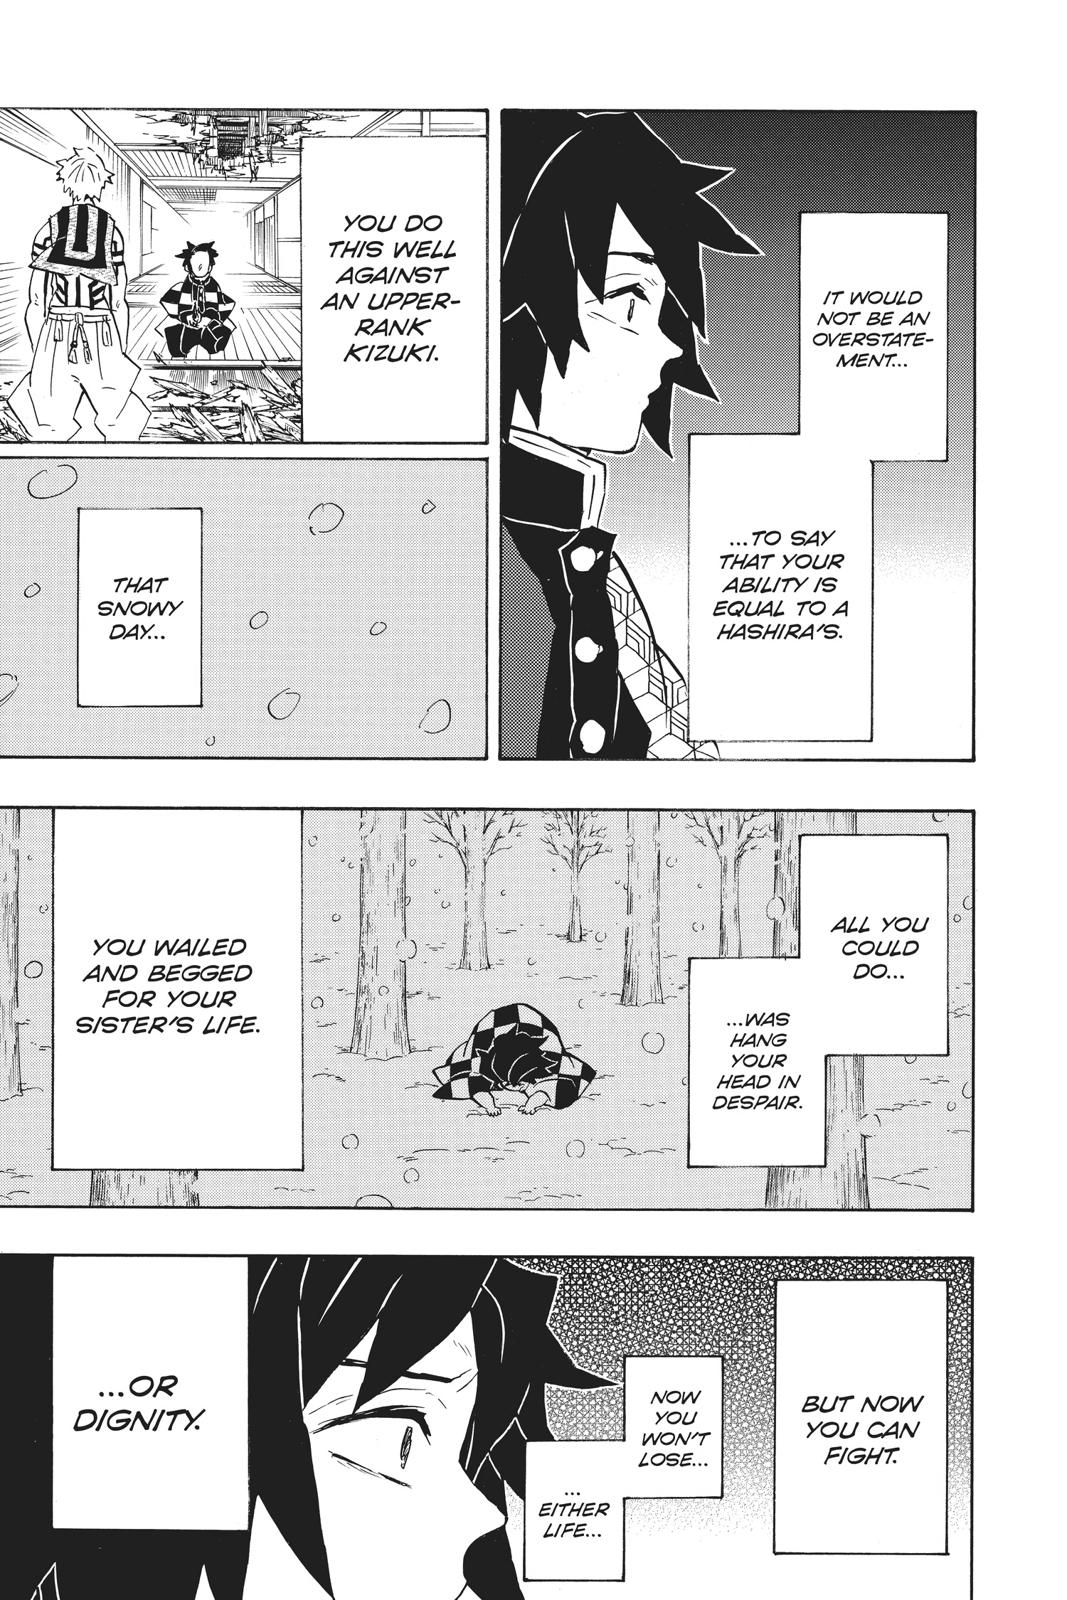 Demon Slayer Manga Manga Chapter - 147 - image 8